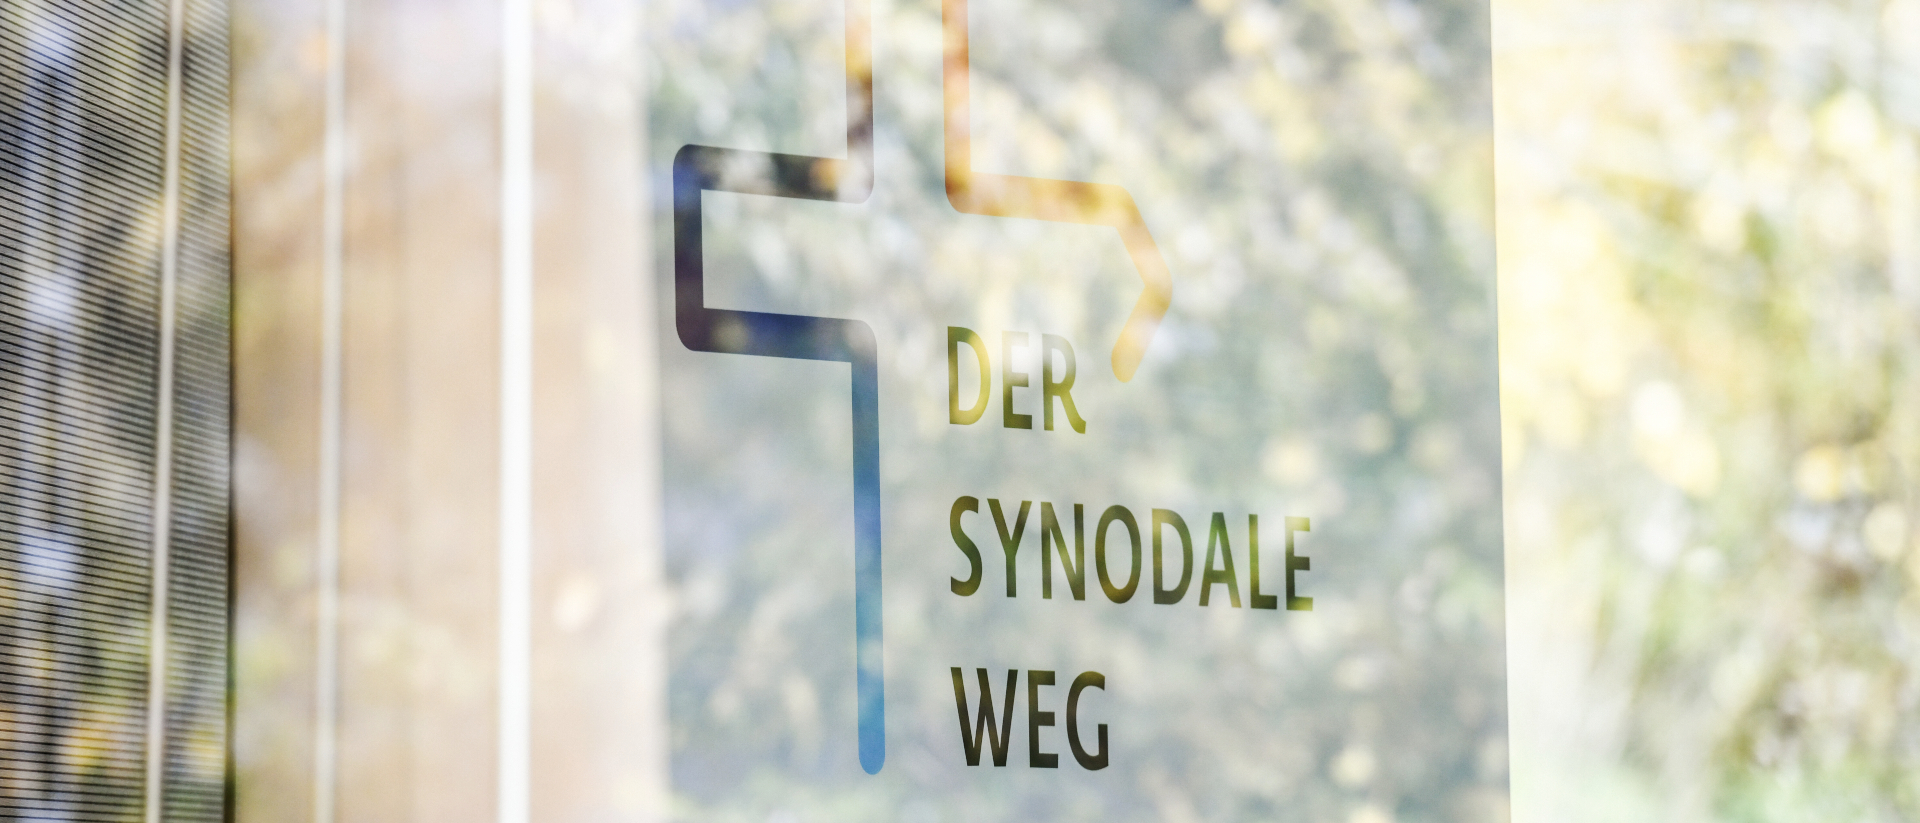 L'avenir de l’église catholique allemande se redessine grâce au "chemin synodal" qui a débuté en janvier 2020 | © KNA